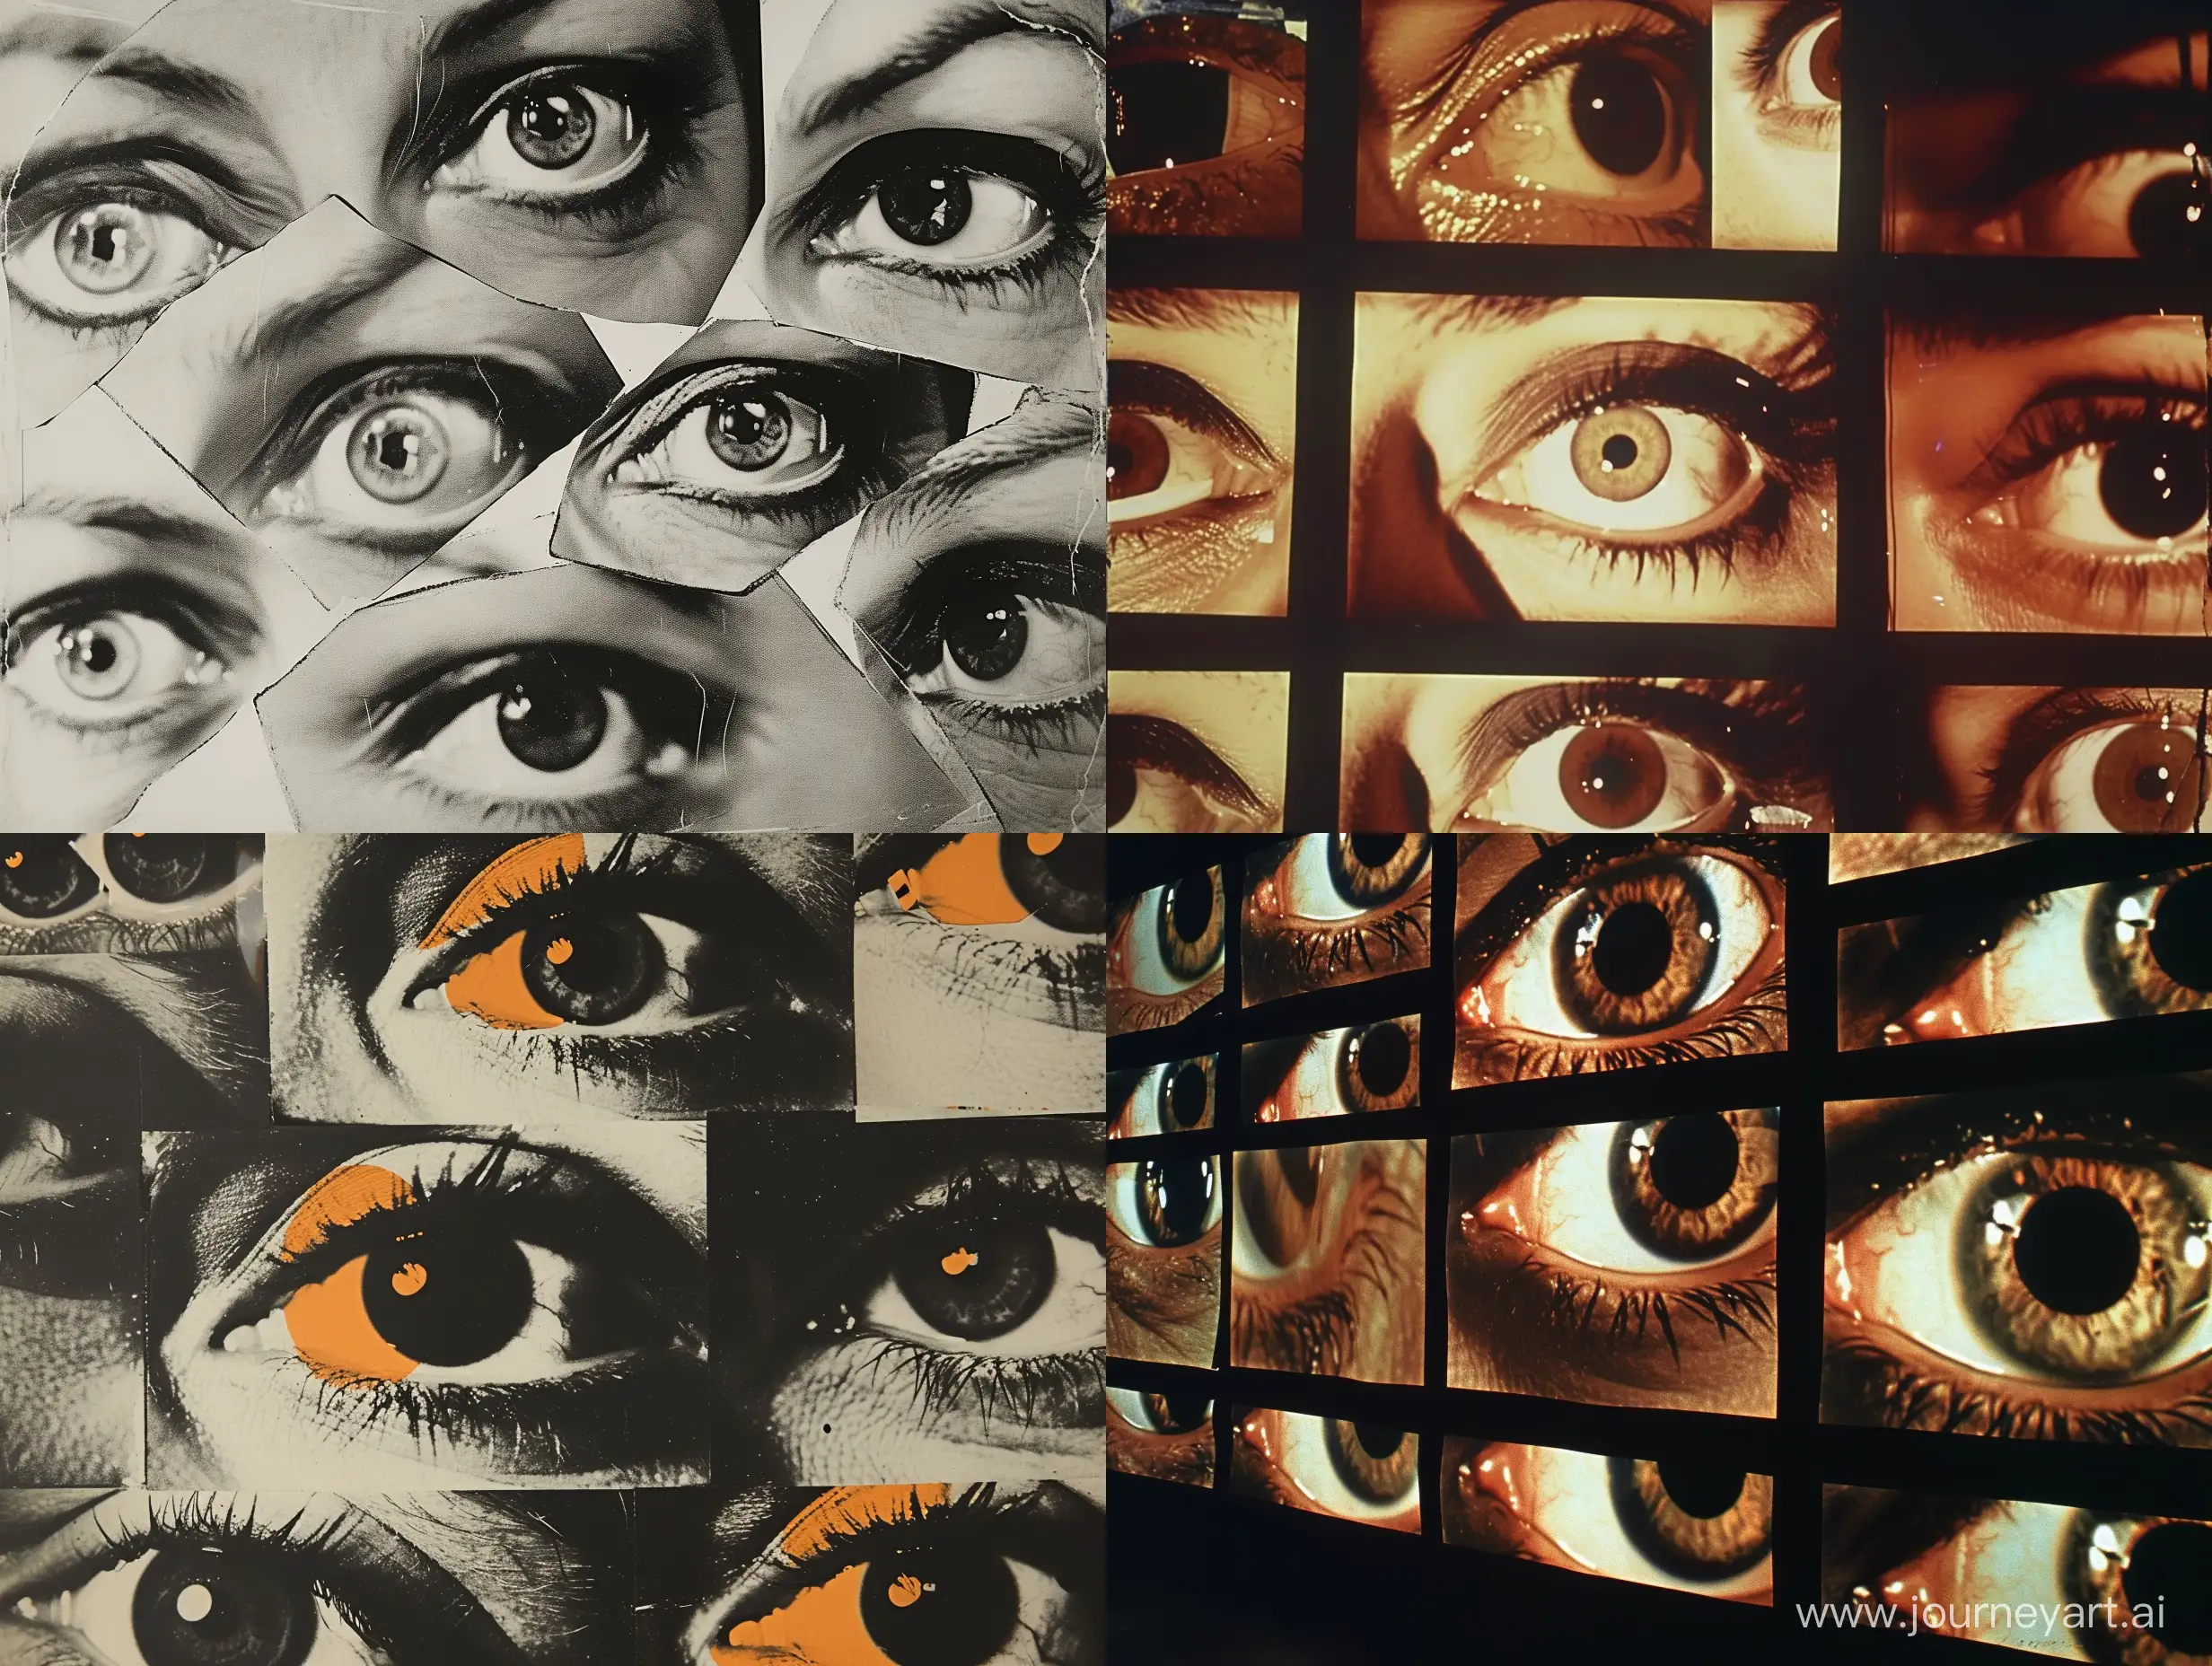 Surreal-Cinematic-Stills-Million-Eyes-in-Andy-WarholInspired-Minimalist-Film-Masterpiece